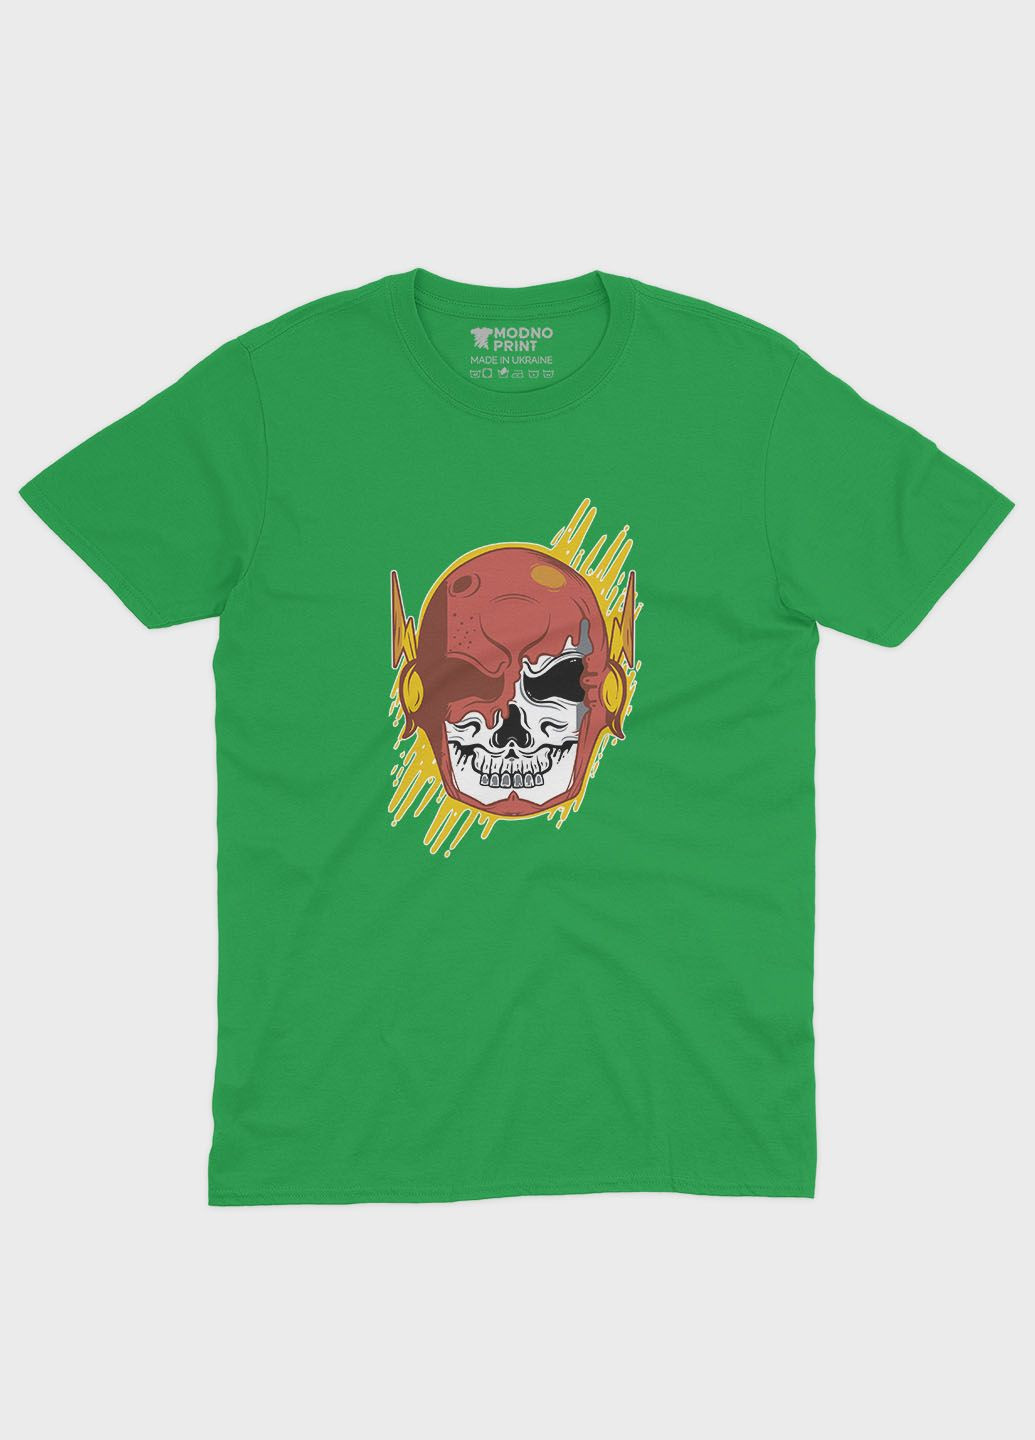 Зелена демісезонна футболка для хлопчика з принтом супергероя - флеш (ts001-1-keg-006-010-003-b) Modno